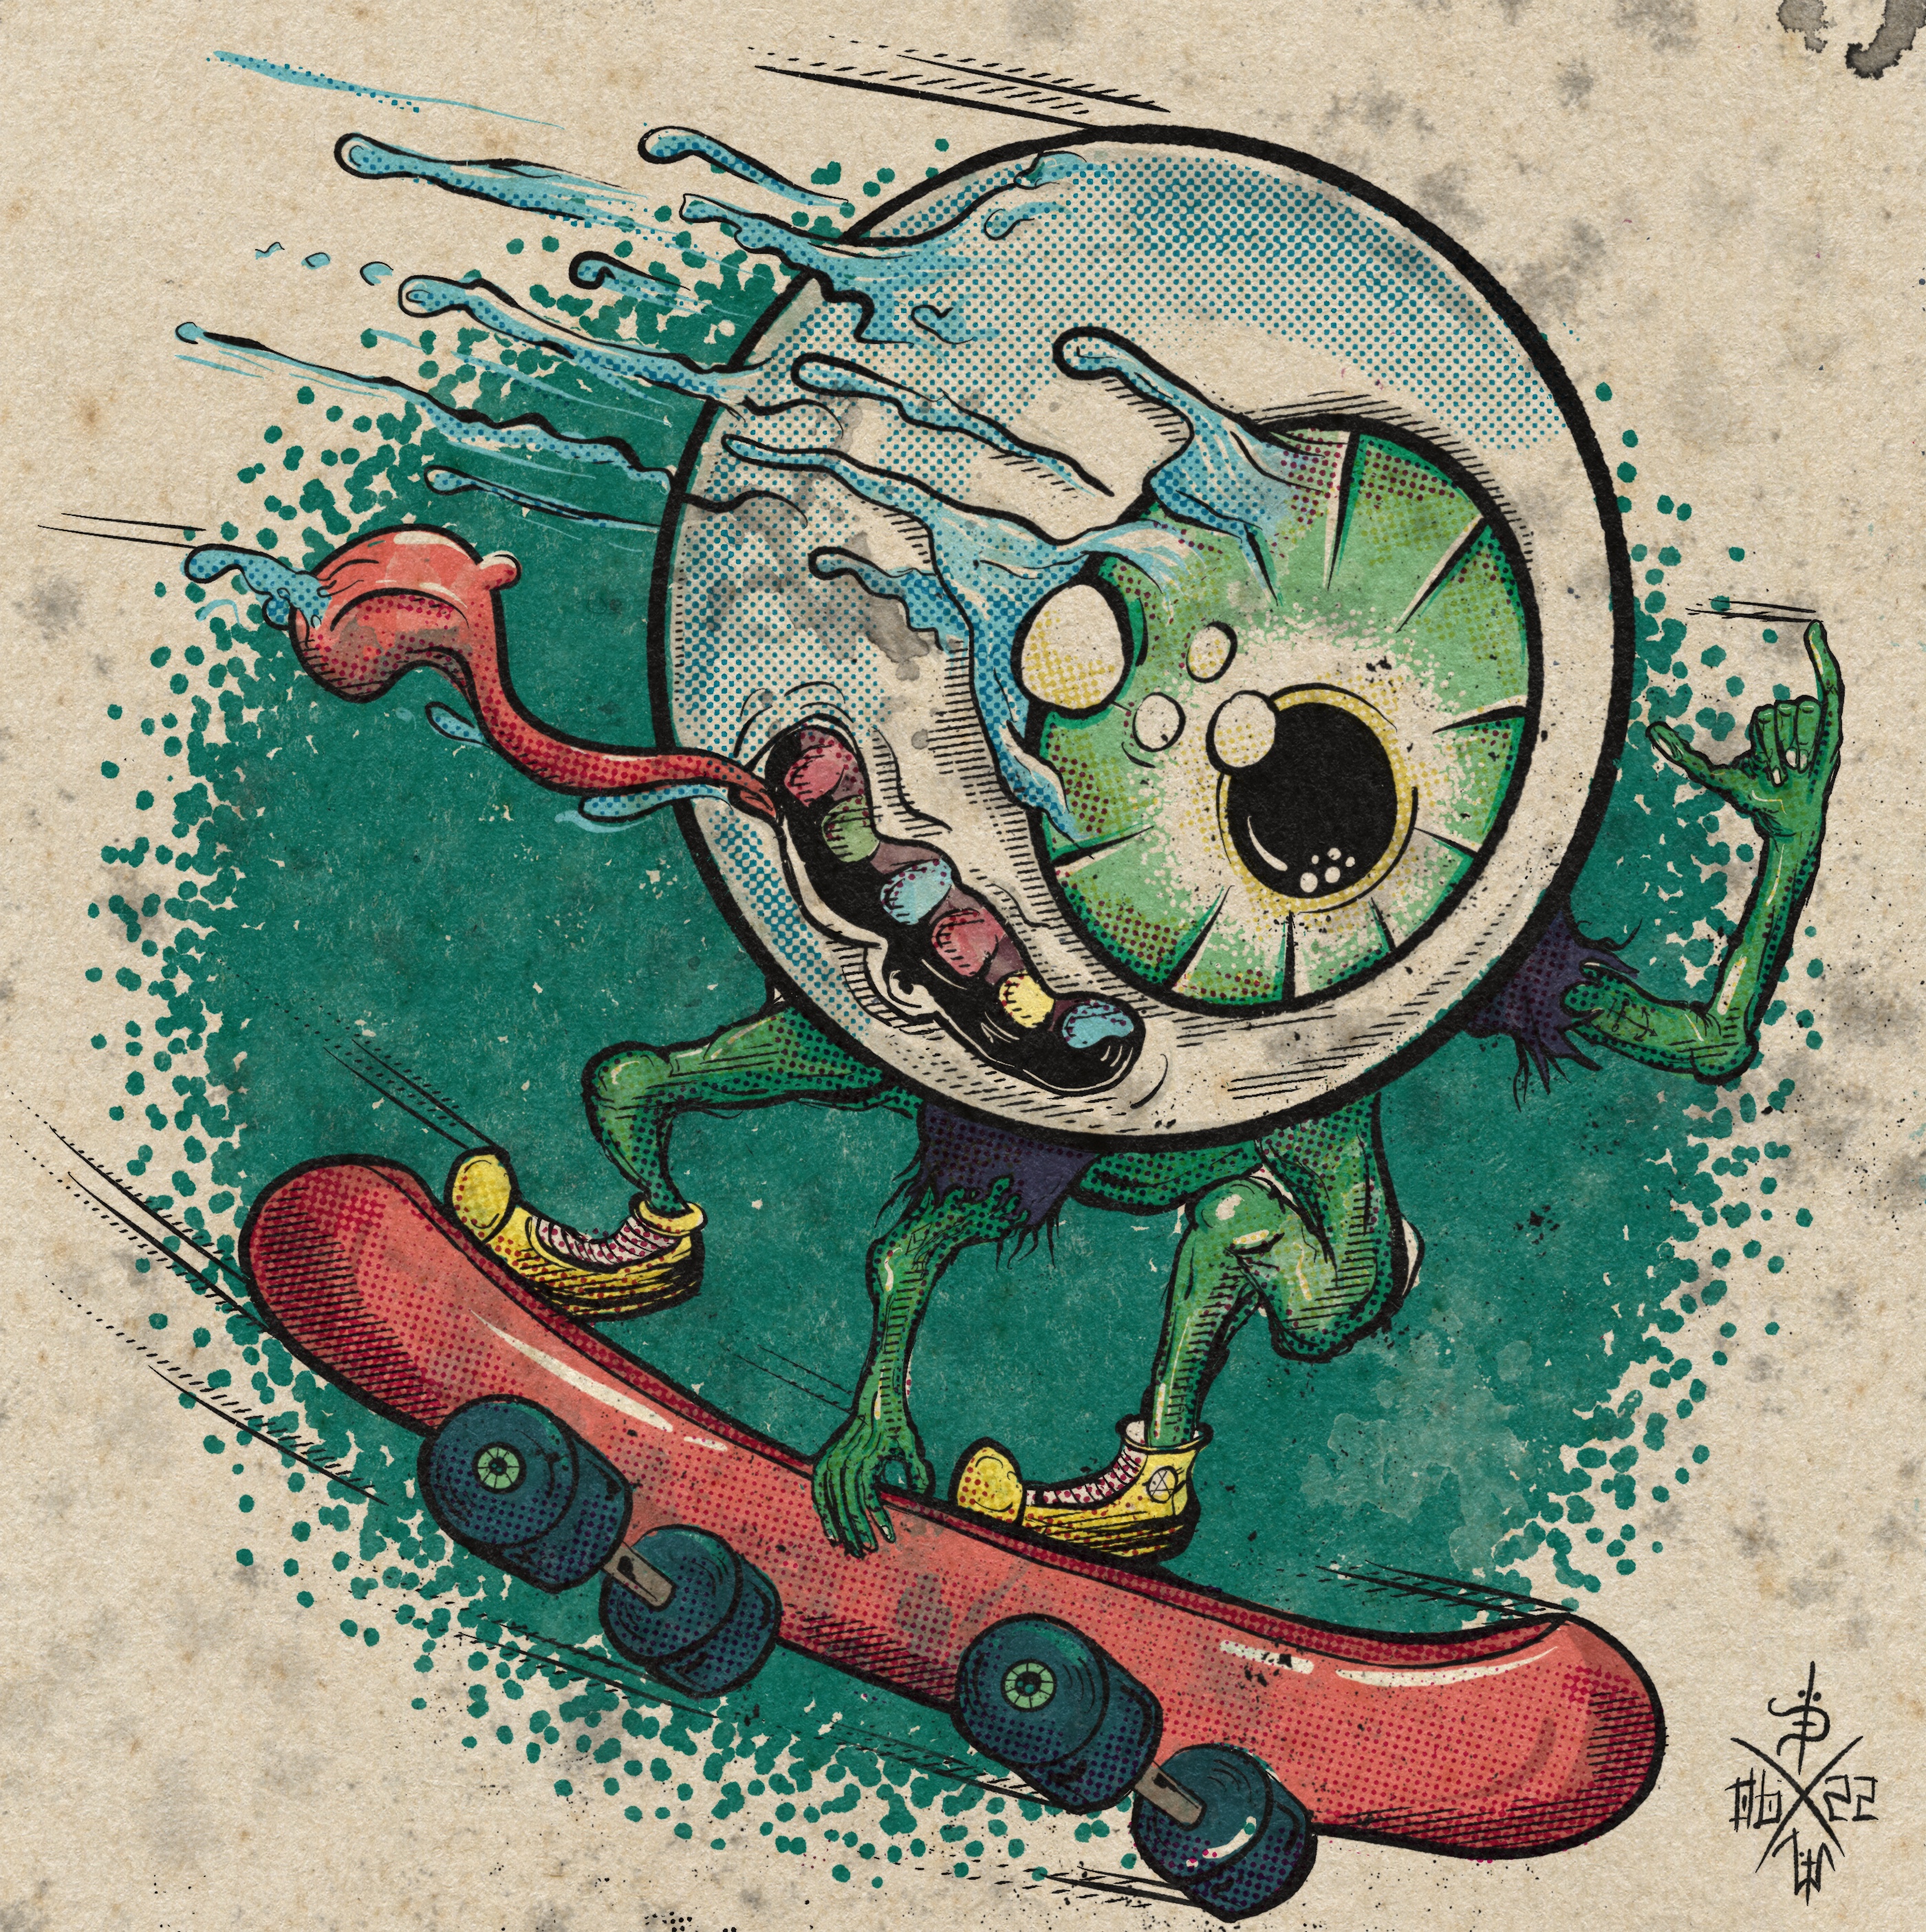 Green skater eyeball in action